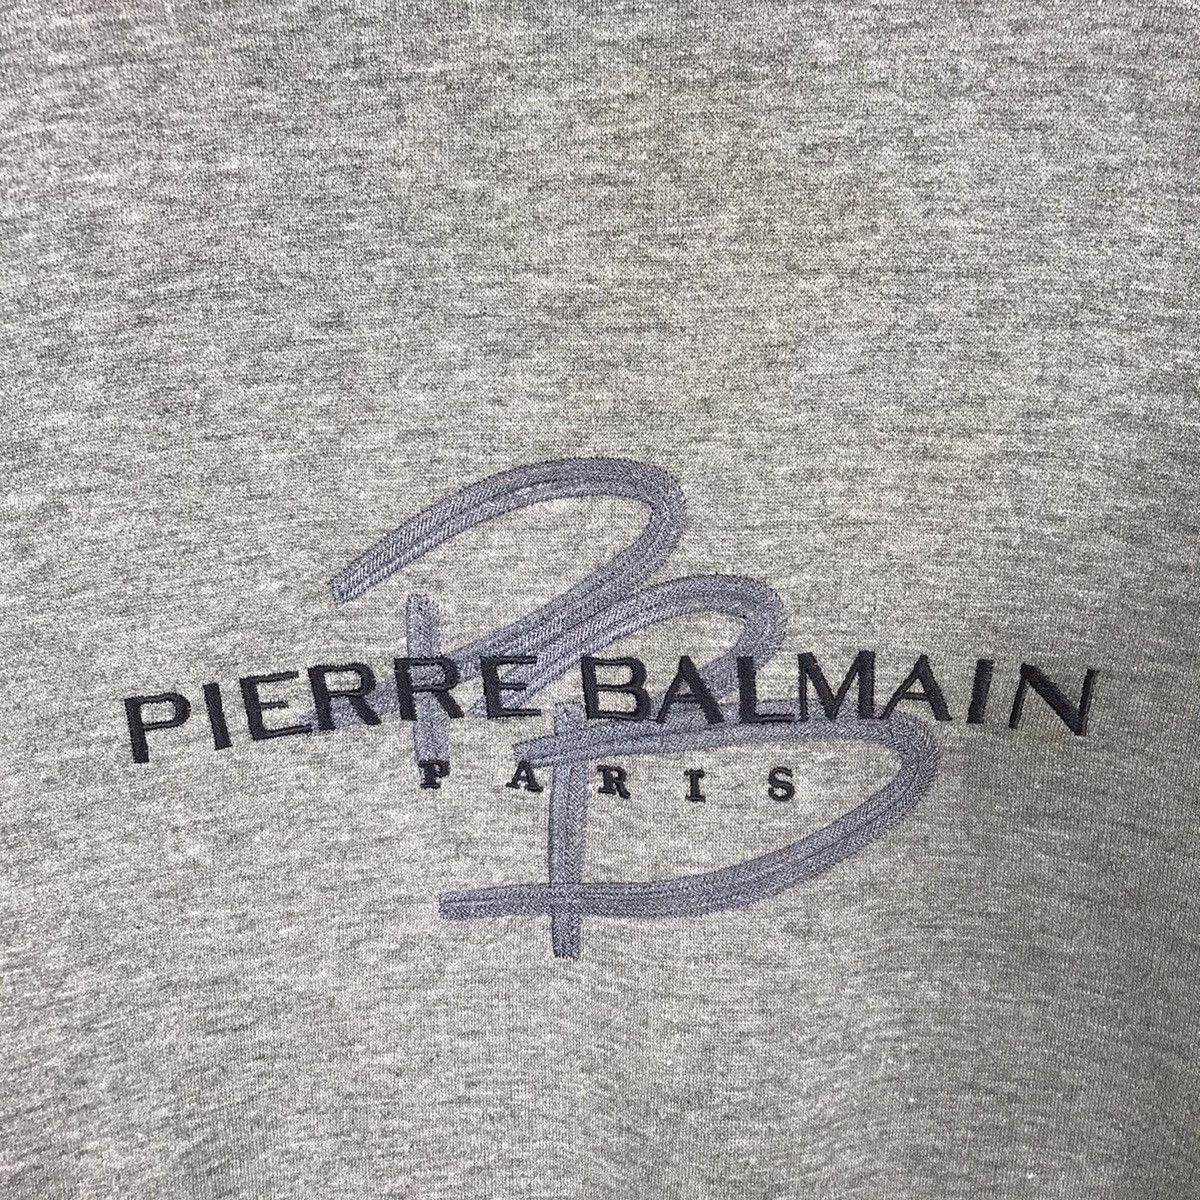 Vintage Pierre Blamain Sweatshirt - 4